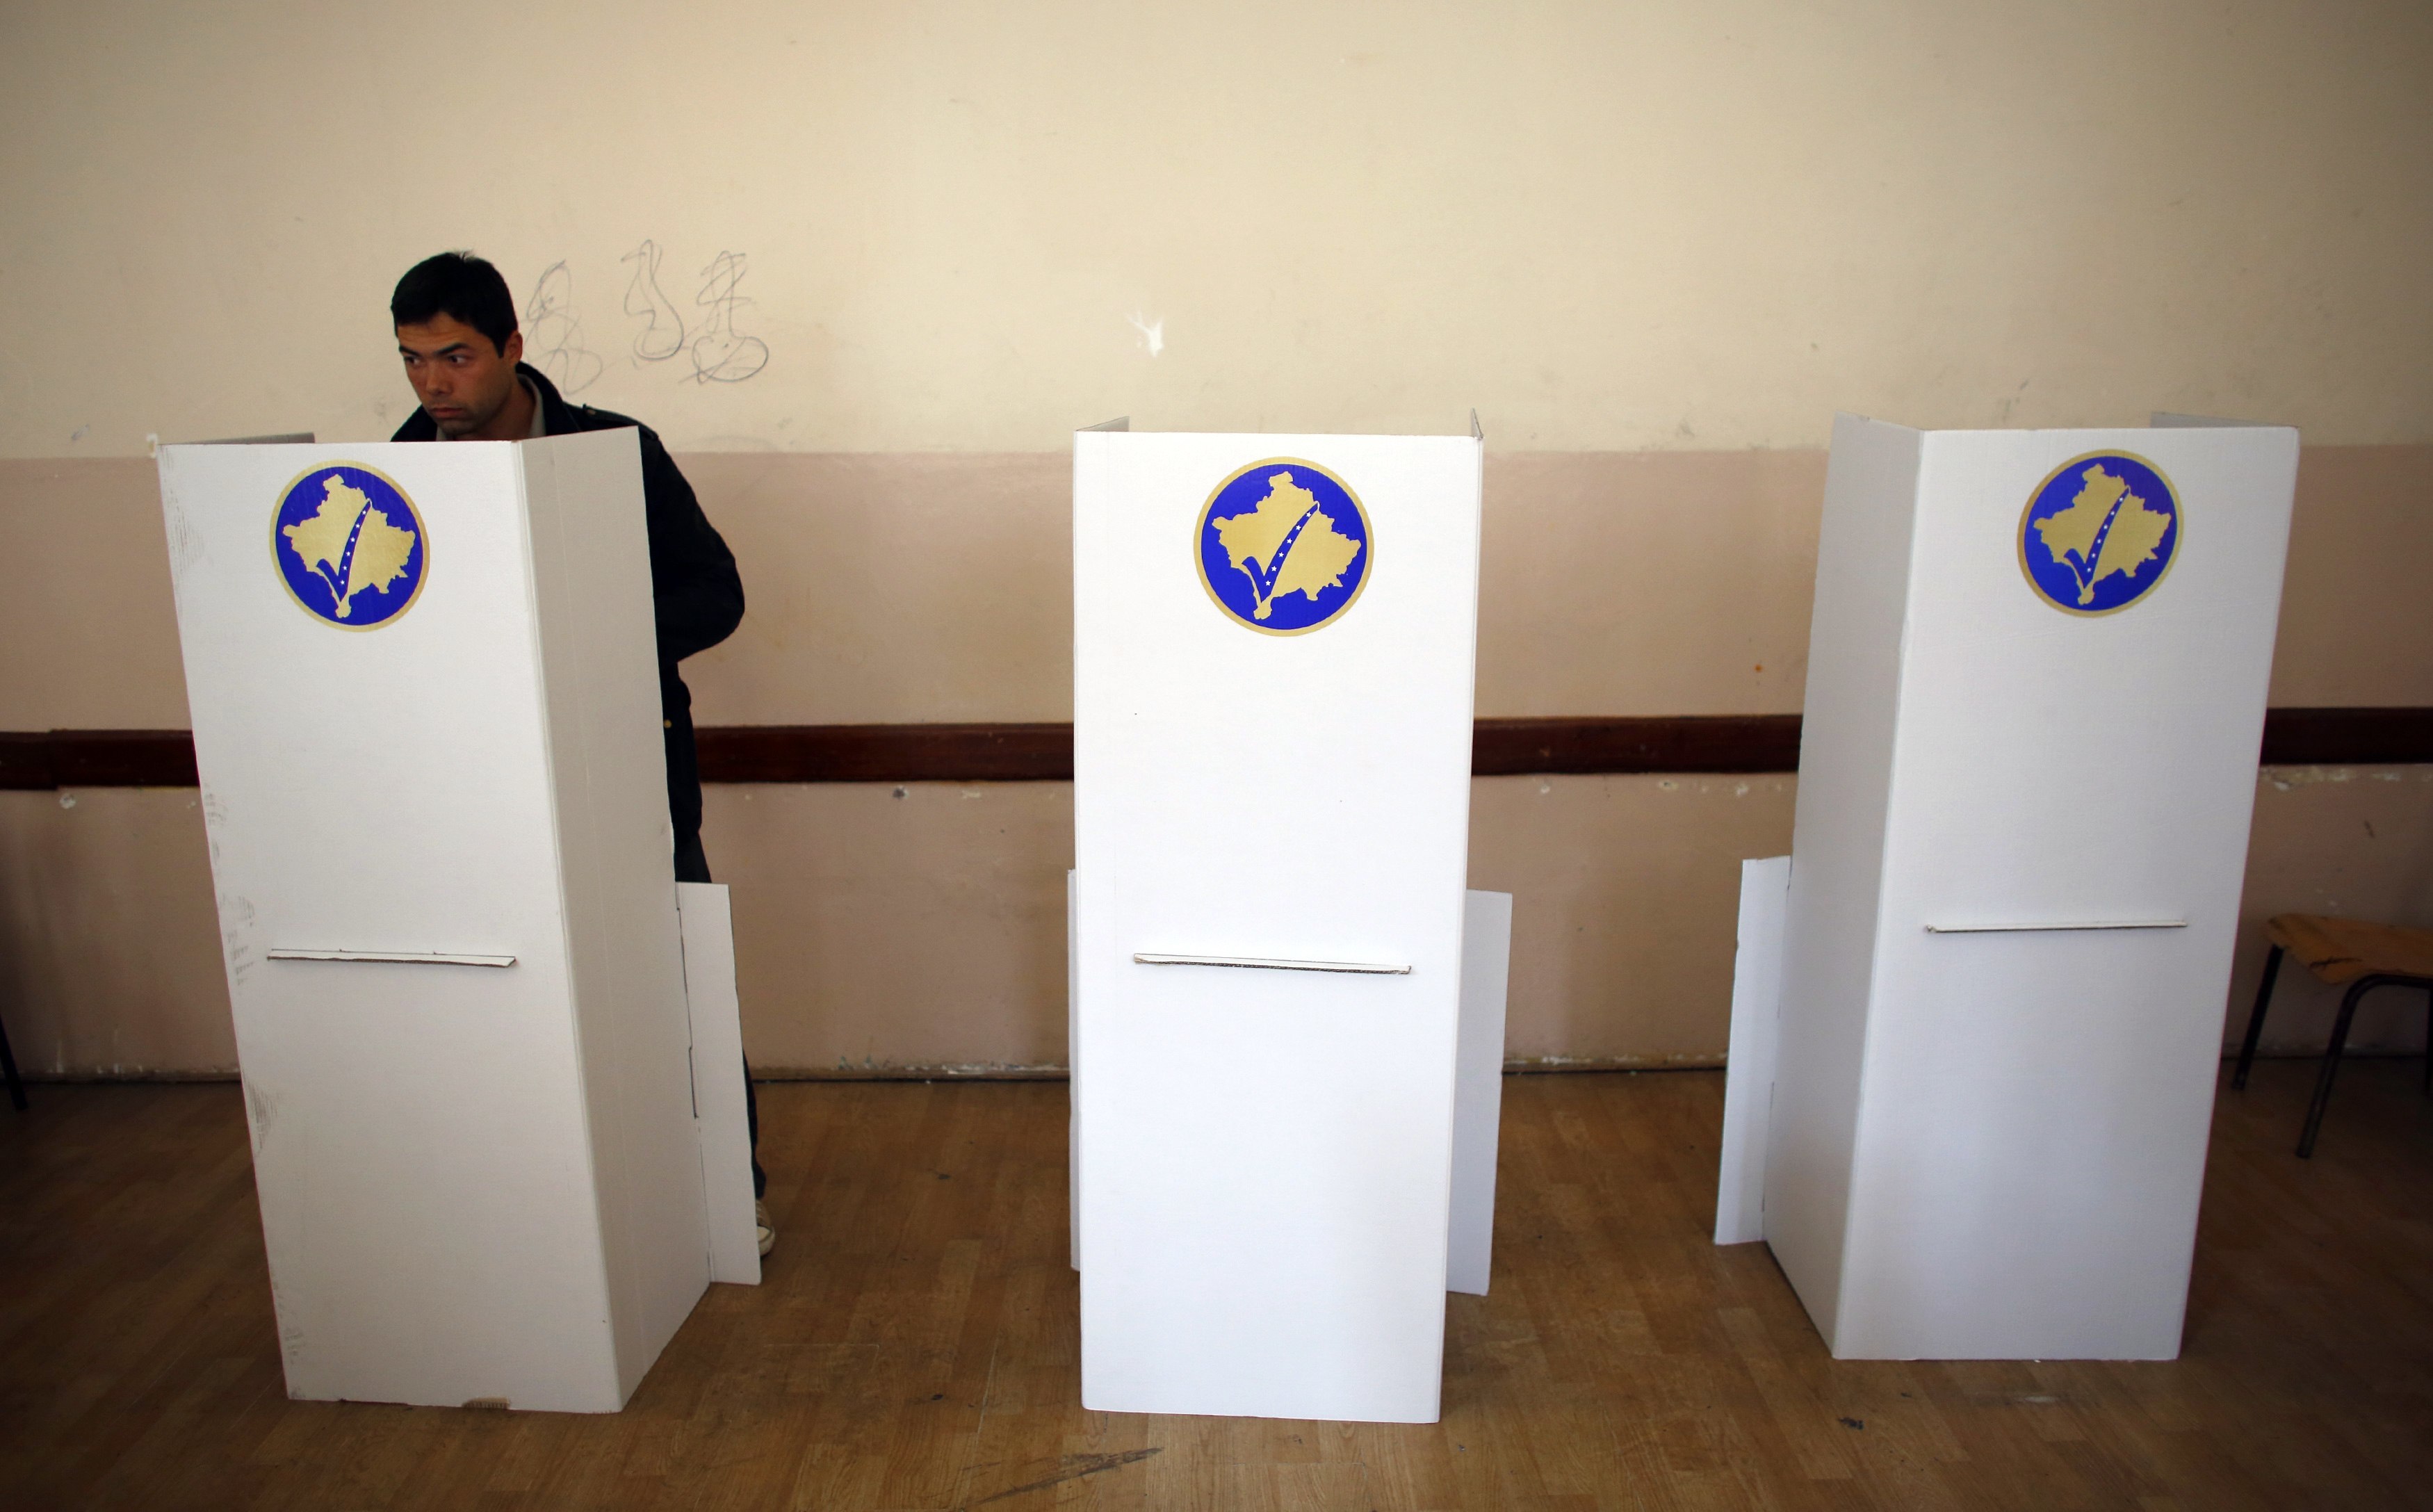 Ο πρωθυπουργός του Κοσόβου εξέφρασε την πεποίθηση ότι οι επαναληπτικές δημοτικές εκλογές στις 17 Νοεμβρίου θα είναι επιτυχείς